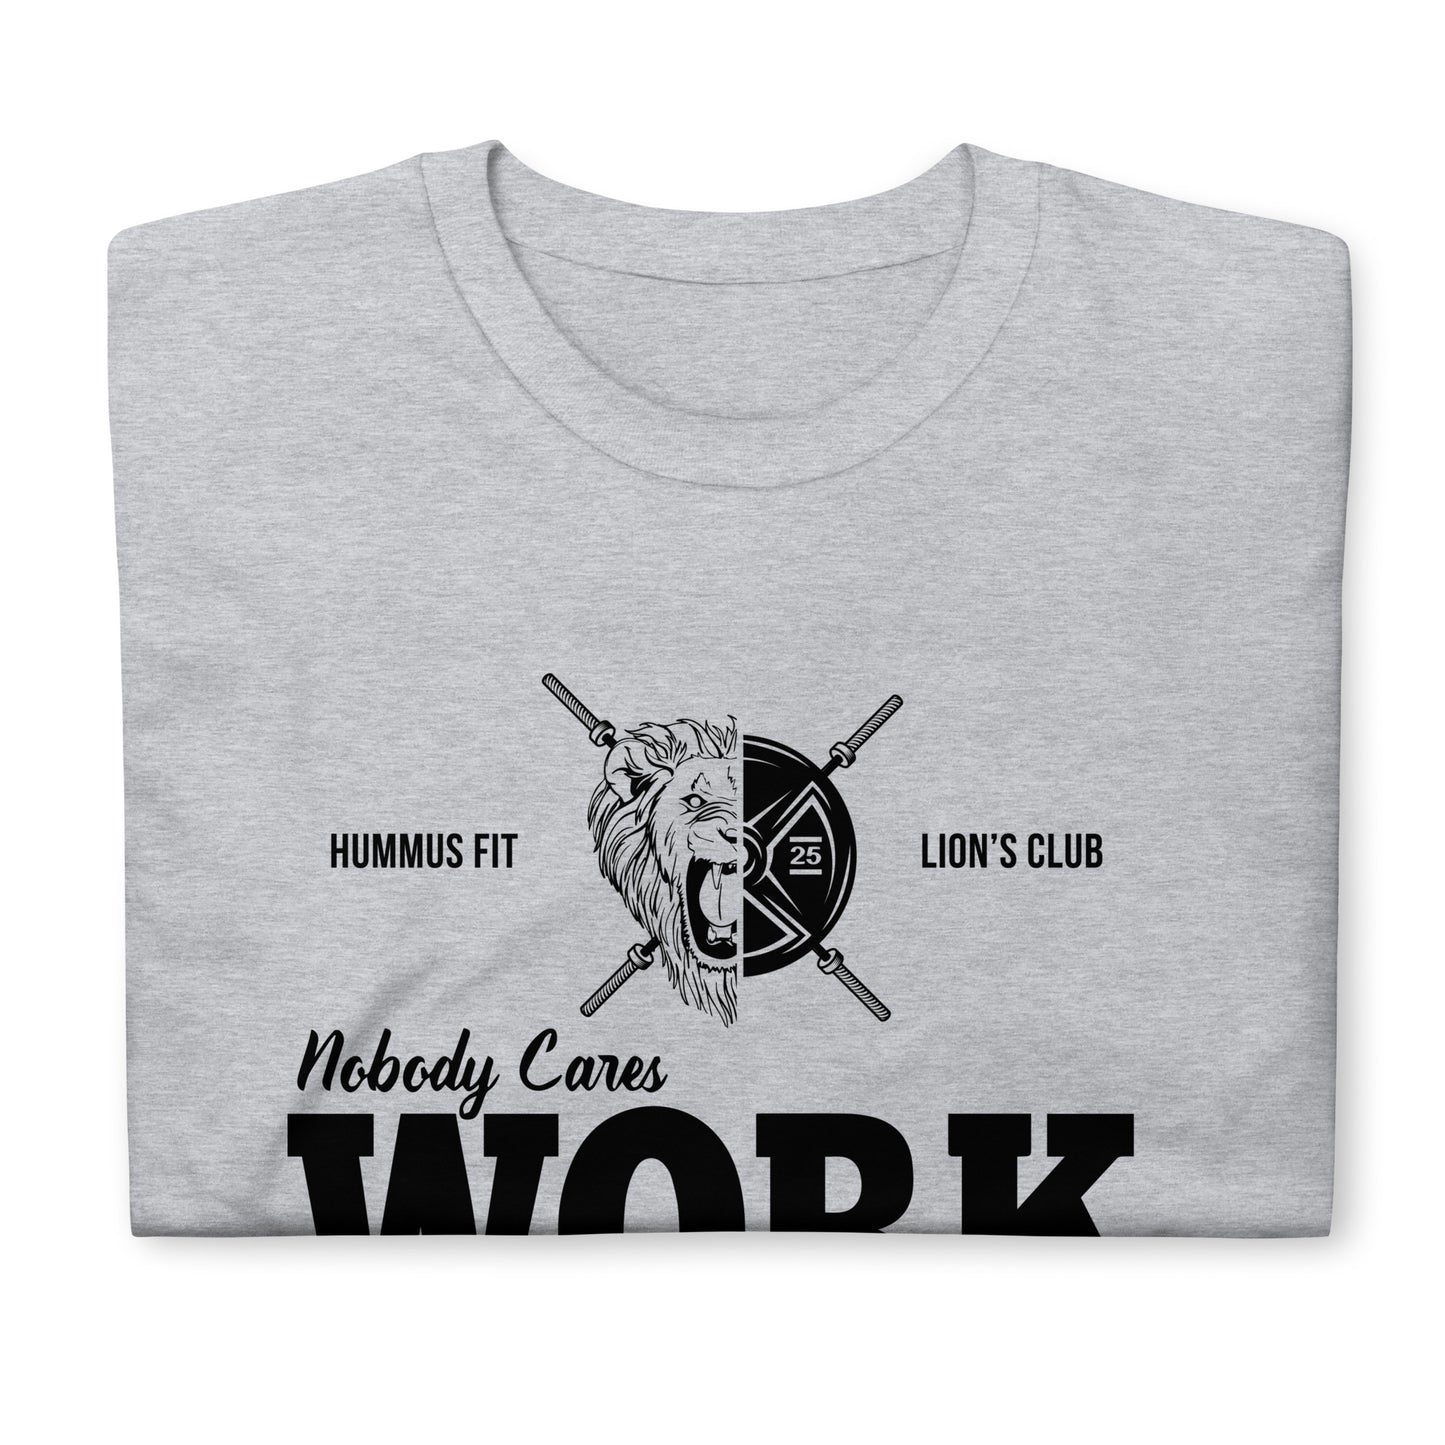 A nadie le importa trabajar más duro - Camiseta unisex Softstyle (gris deportivo)